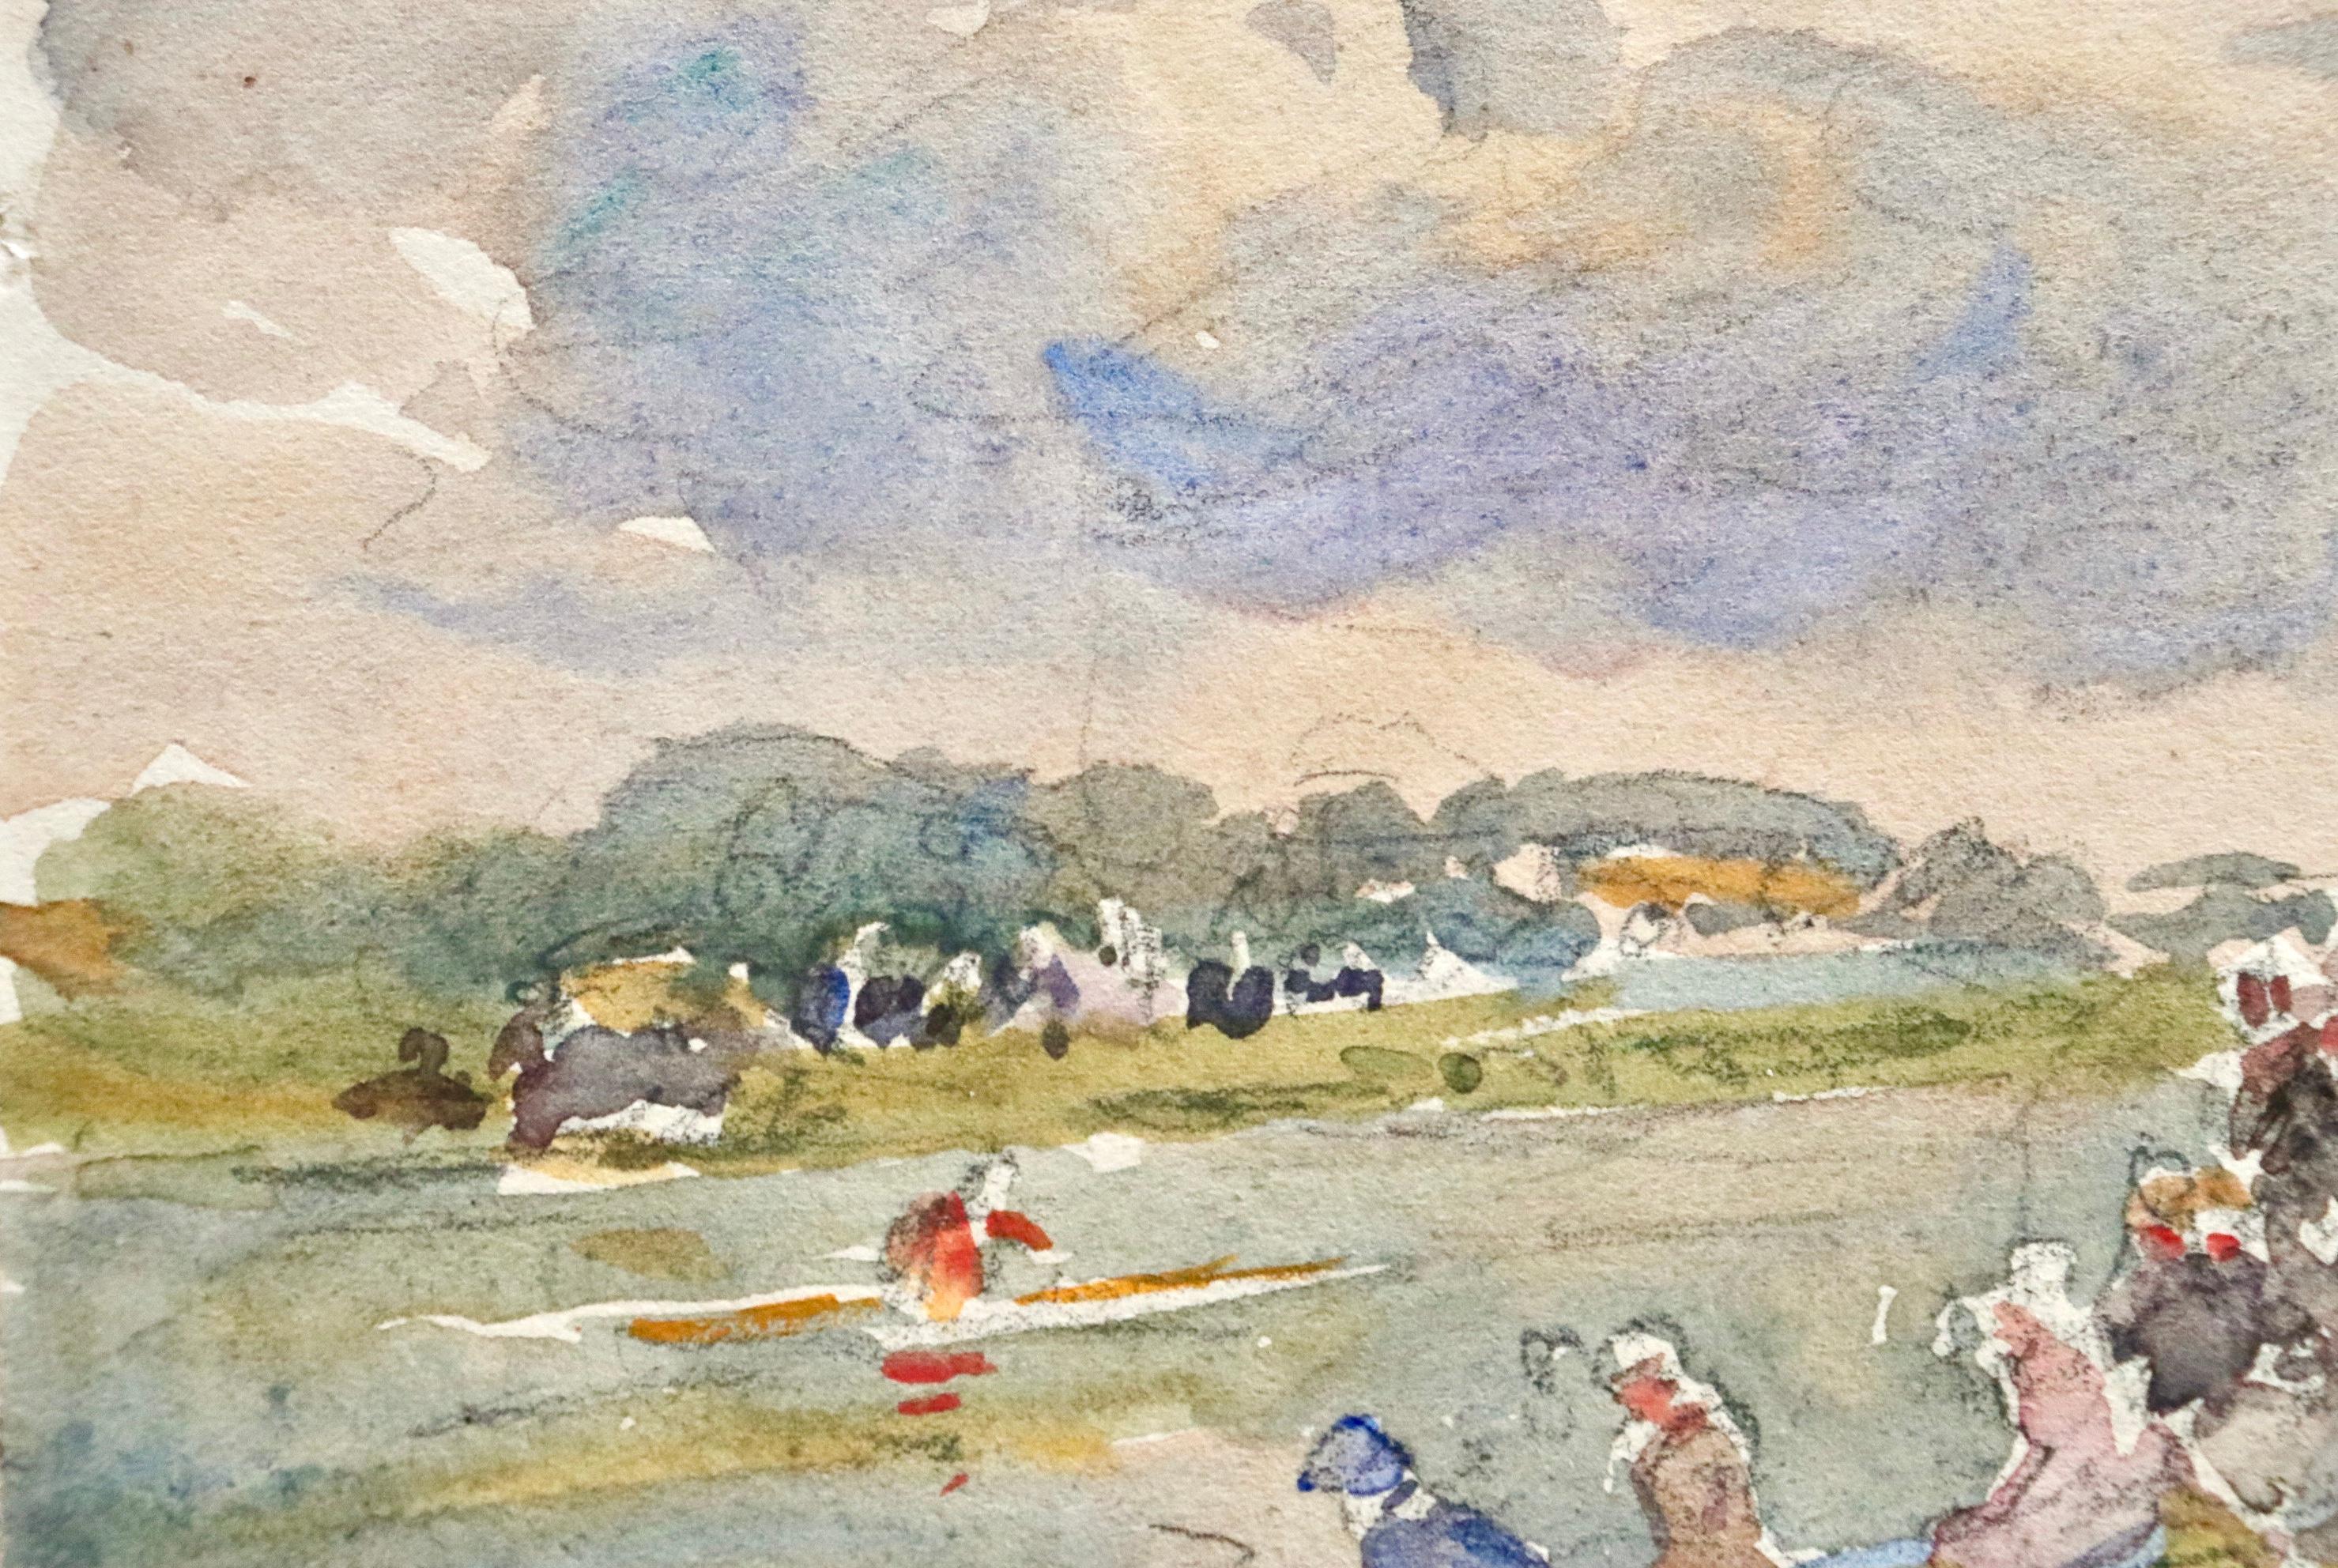 Aquarell auf Papier von Henri Duhem mit einer Darstellung der Feierlichkeiten zum Tag der Bastille in Douai, Frankreich. Ein Kanu rudert an den am Flussufer versammelten Menschen vorbei, während über dem Kopf die französische Flagge weht. Verso